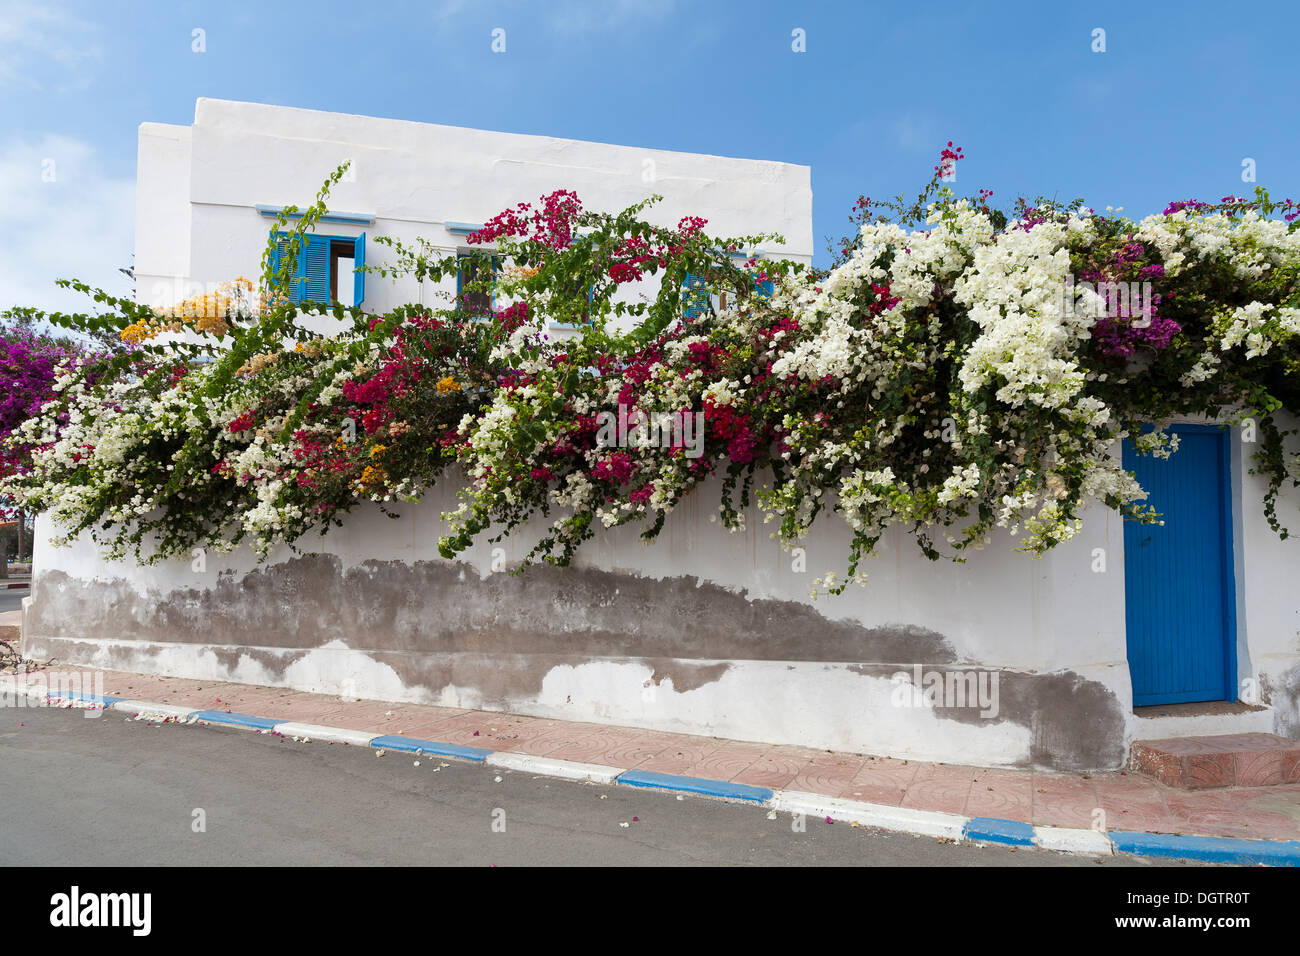 House walls covered in Bougainvillea, Plaza de Espana in the town of Sidi Ifni, Atlantic coast of Morocco Stock Photo